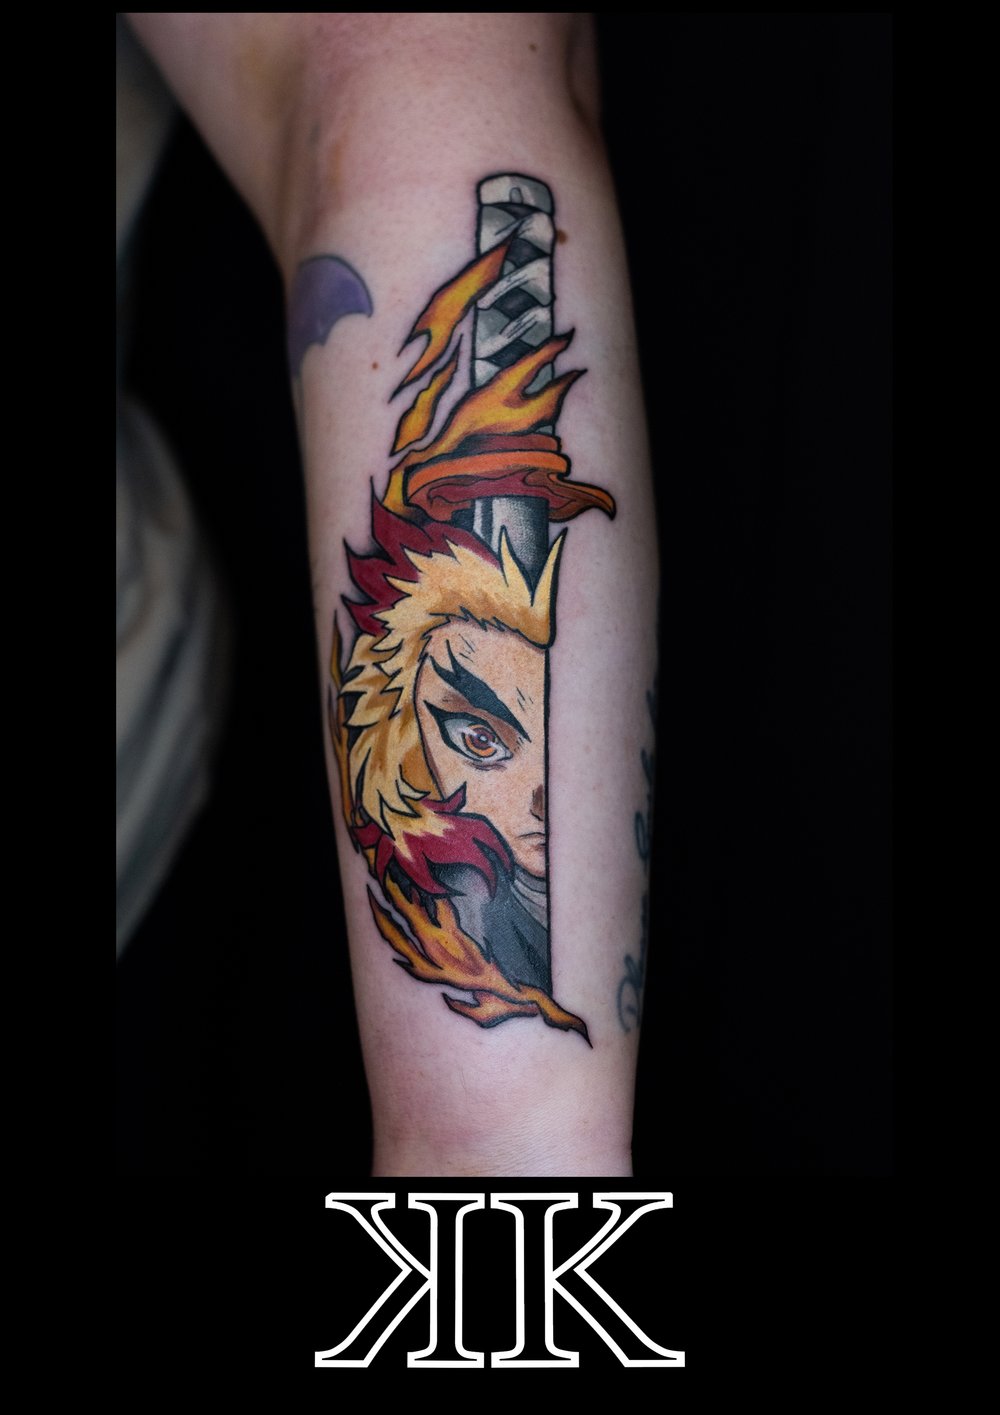 Ryan — Two Kings Tattoo Studio